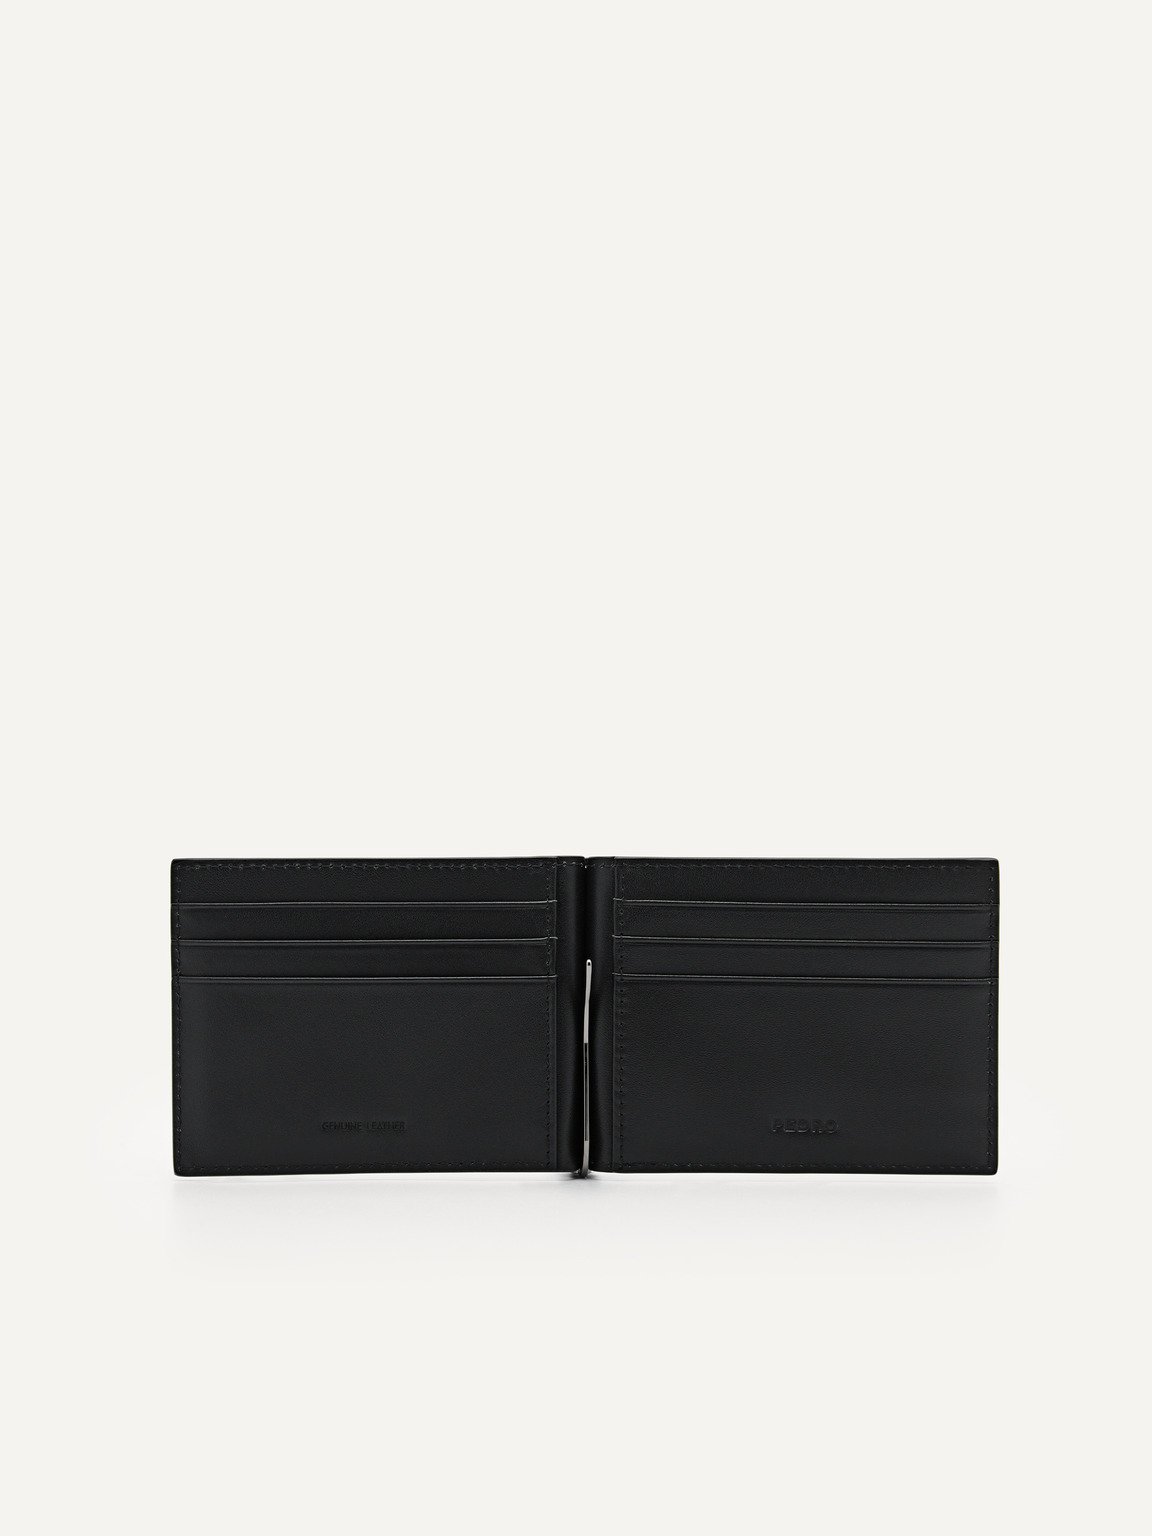 Oliver Leather Bi-Fold Card Holder with Money Clip, Black